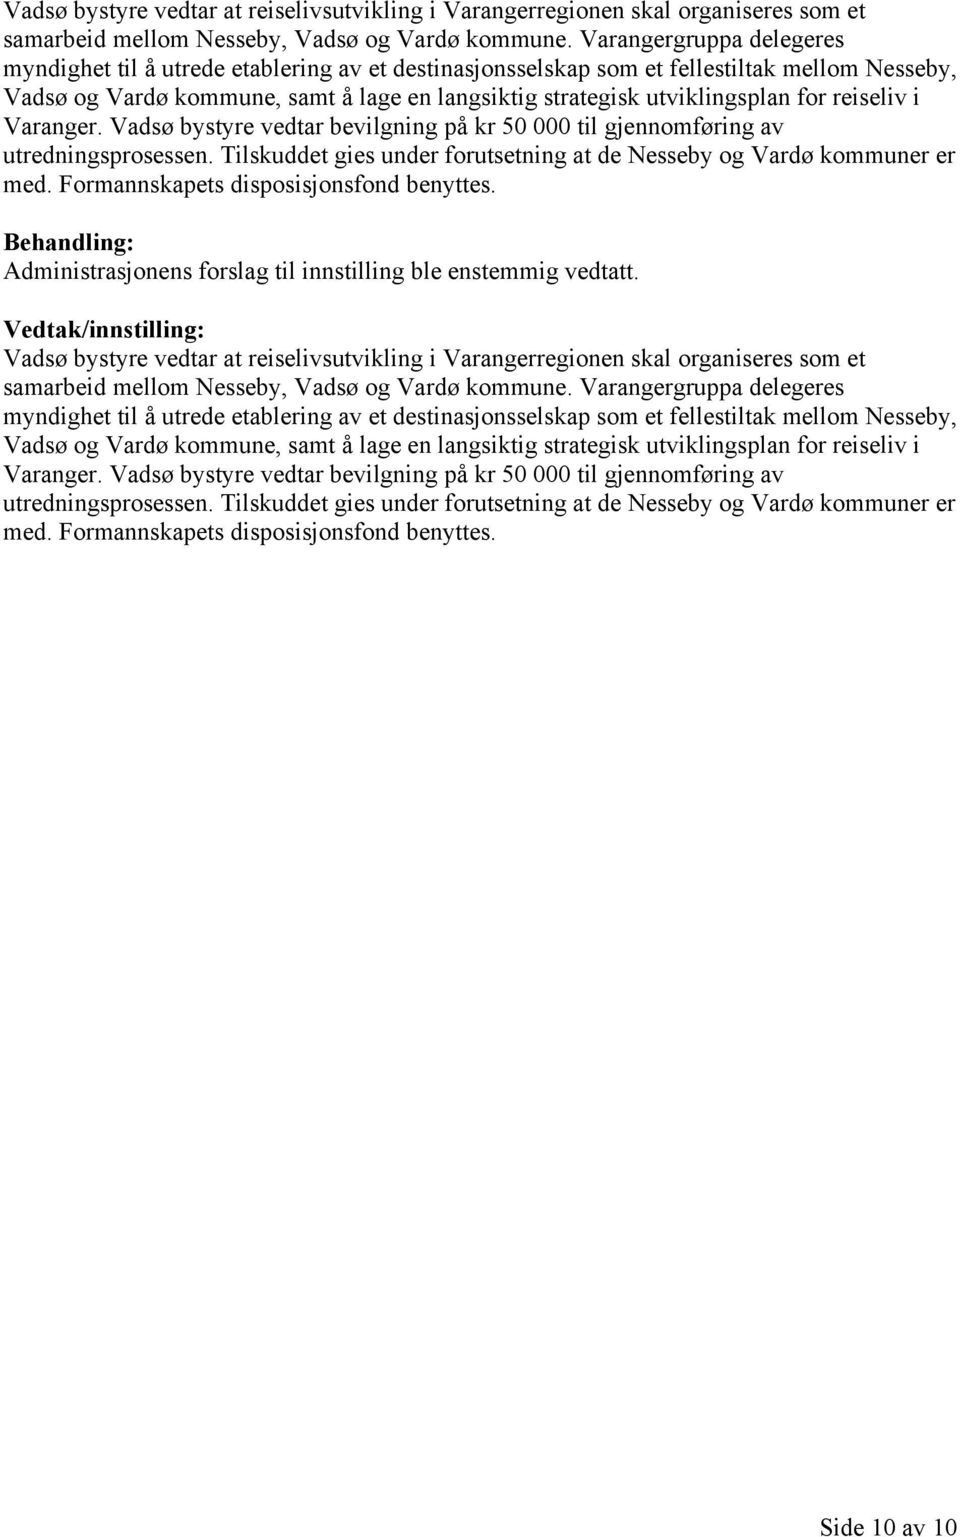 for reiseliv i Varanger. Vadsø bystyre vedtar bevilgning på kr 50 000 til gjennomføring av utredningsprosessen. Tilskuddet gies under forutsetning at de Nesseby og Vardø kommuner er med.